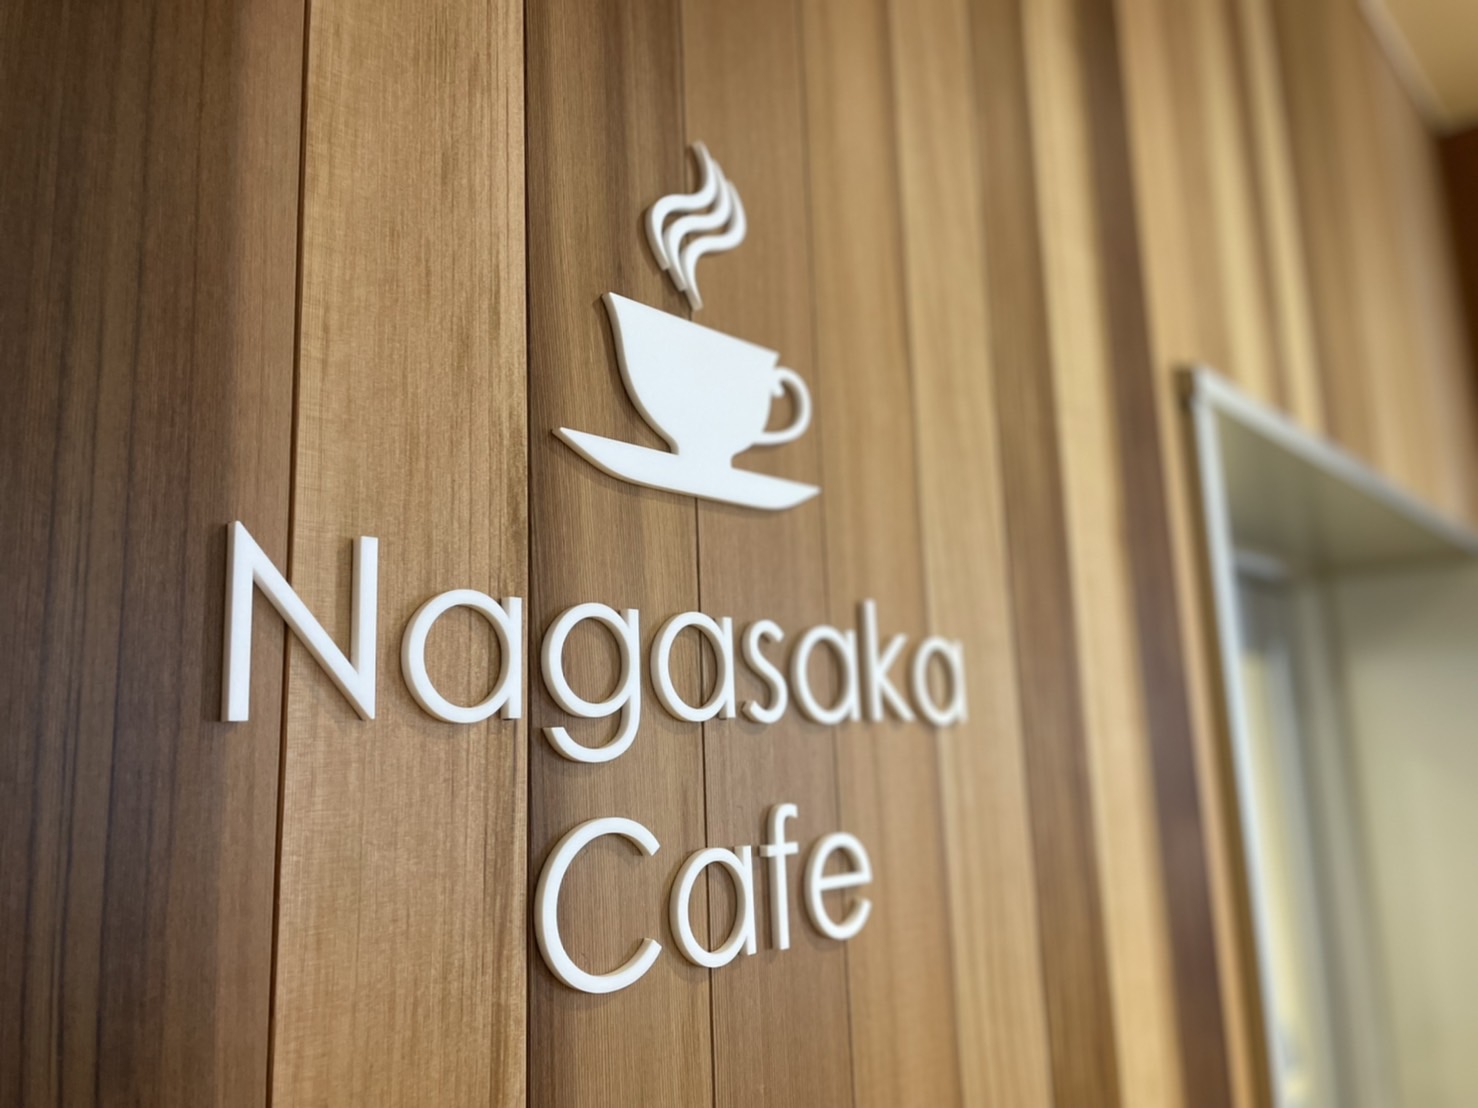 Nagasaka Cafe